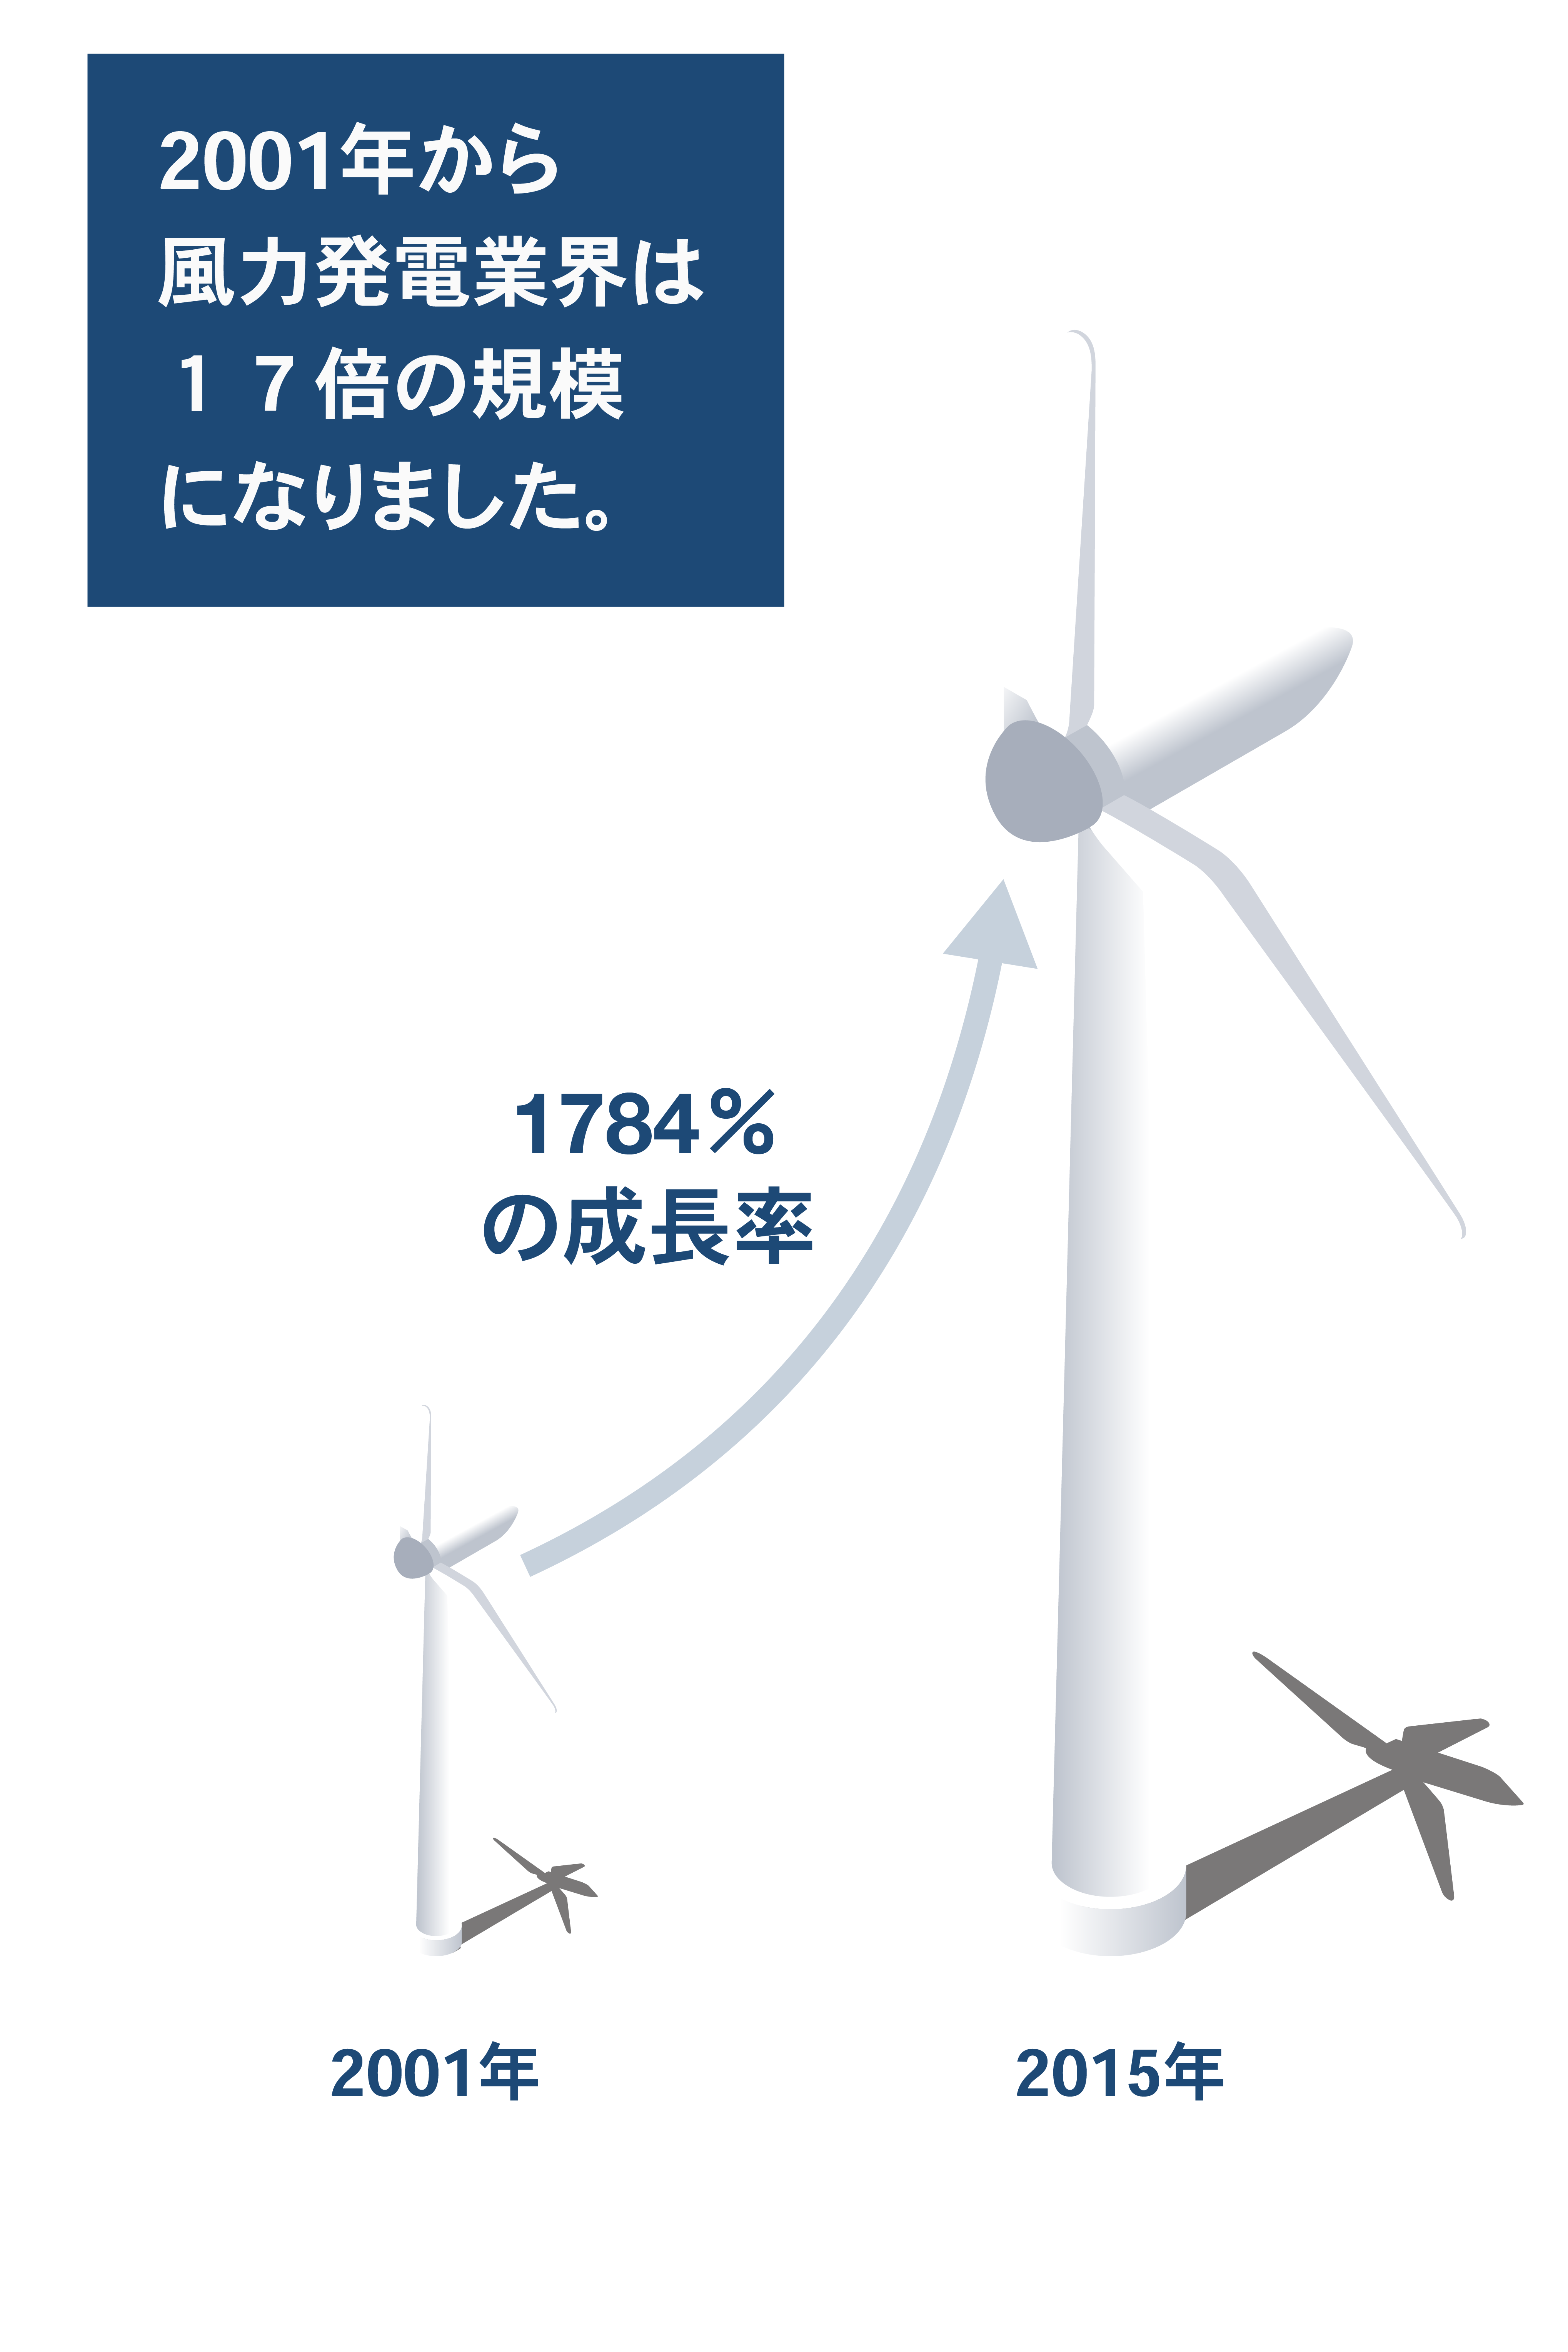 <p>風力は、無限で環境を汚さず、<br> 水をほとんど使わない無料のエネルギー源です。<br> インベナジーは、北米最大の独立系風力発電会社です。</p>